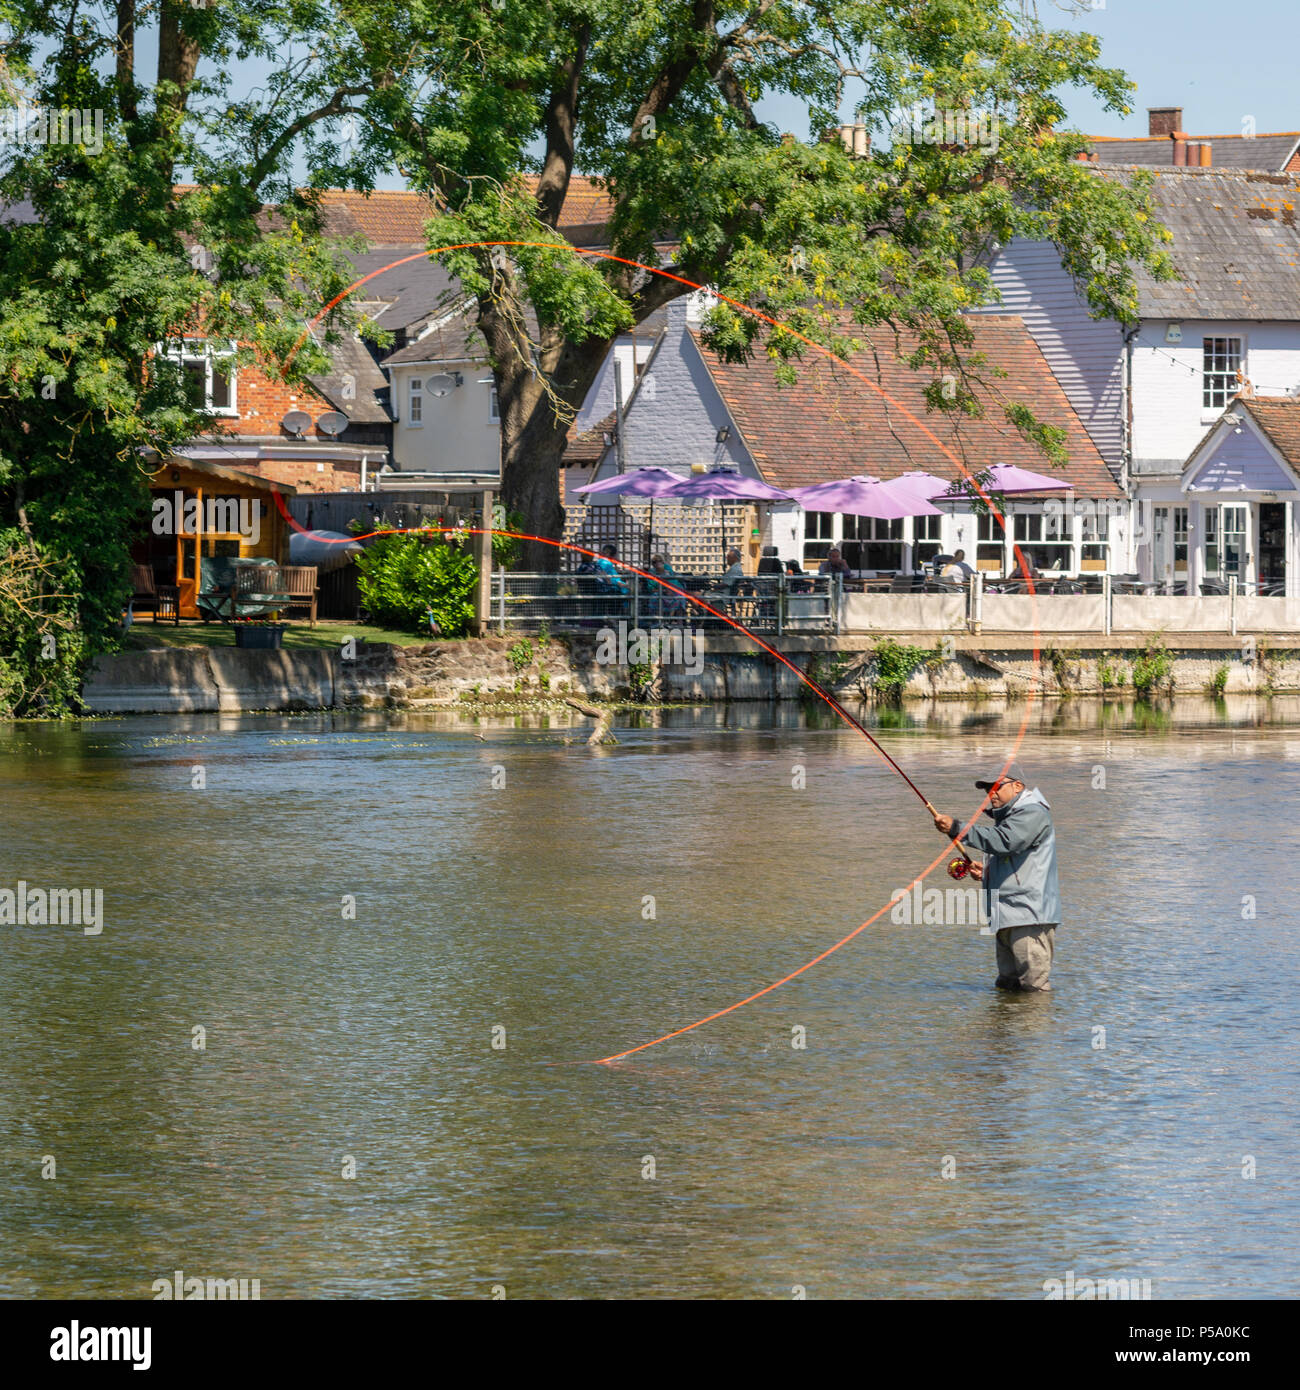 Fordingbridge, Hampshire, Großbritannien, Fisherman hält sich bei heißem Wetter kühl, indem man im kühlen Wasser des Flusses Avon steht und mit einer Angelschnur wirft. Stockfoto